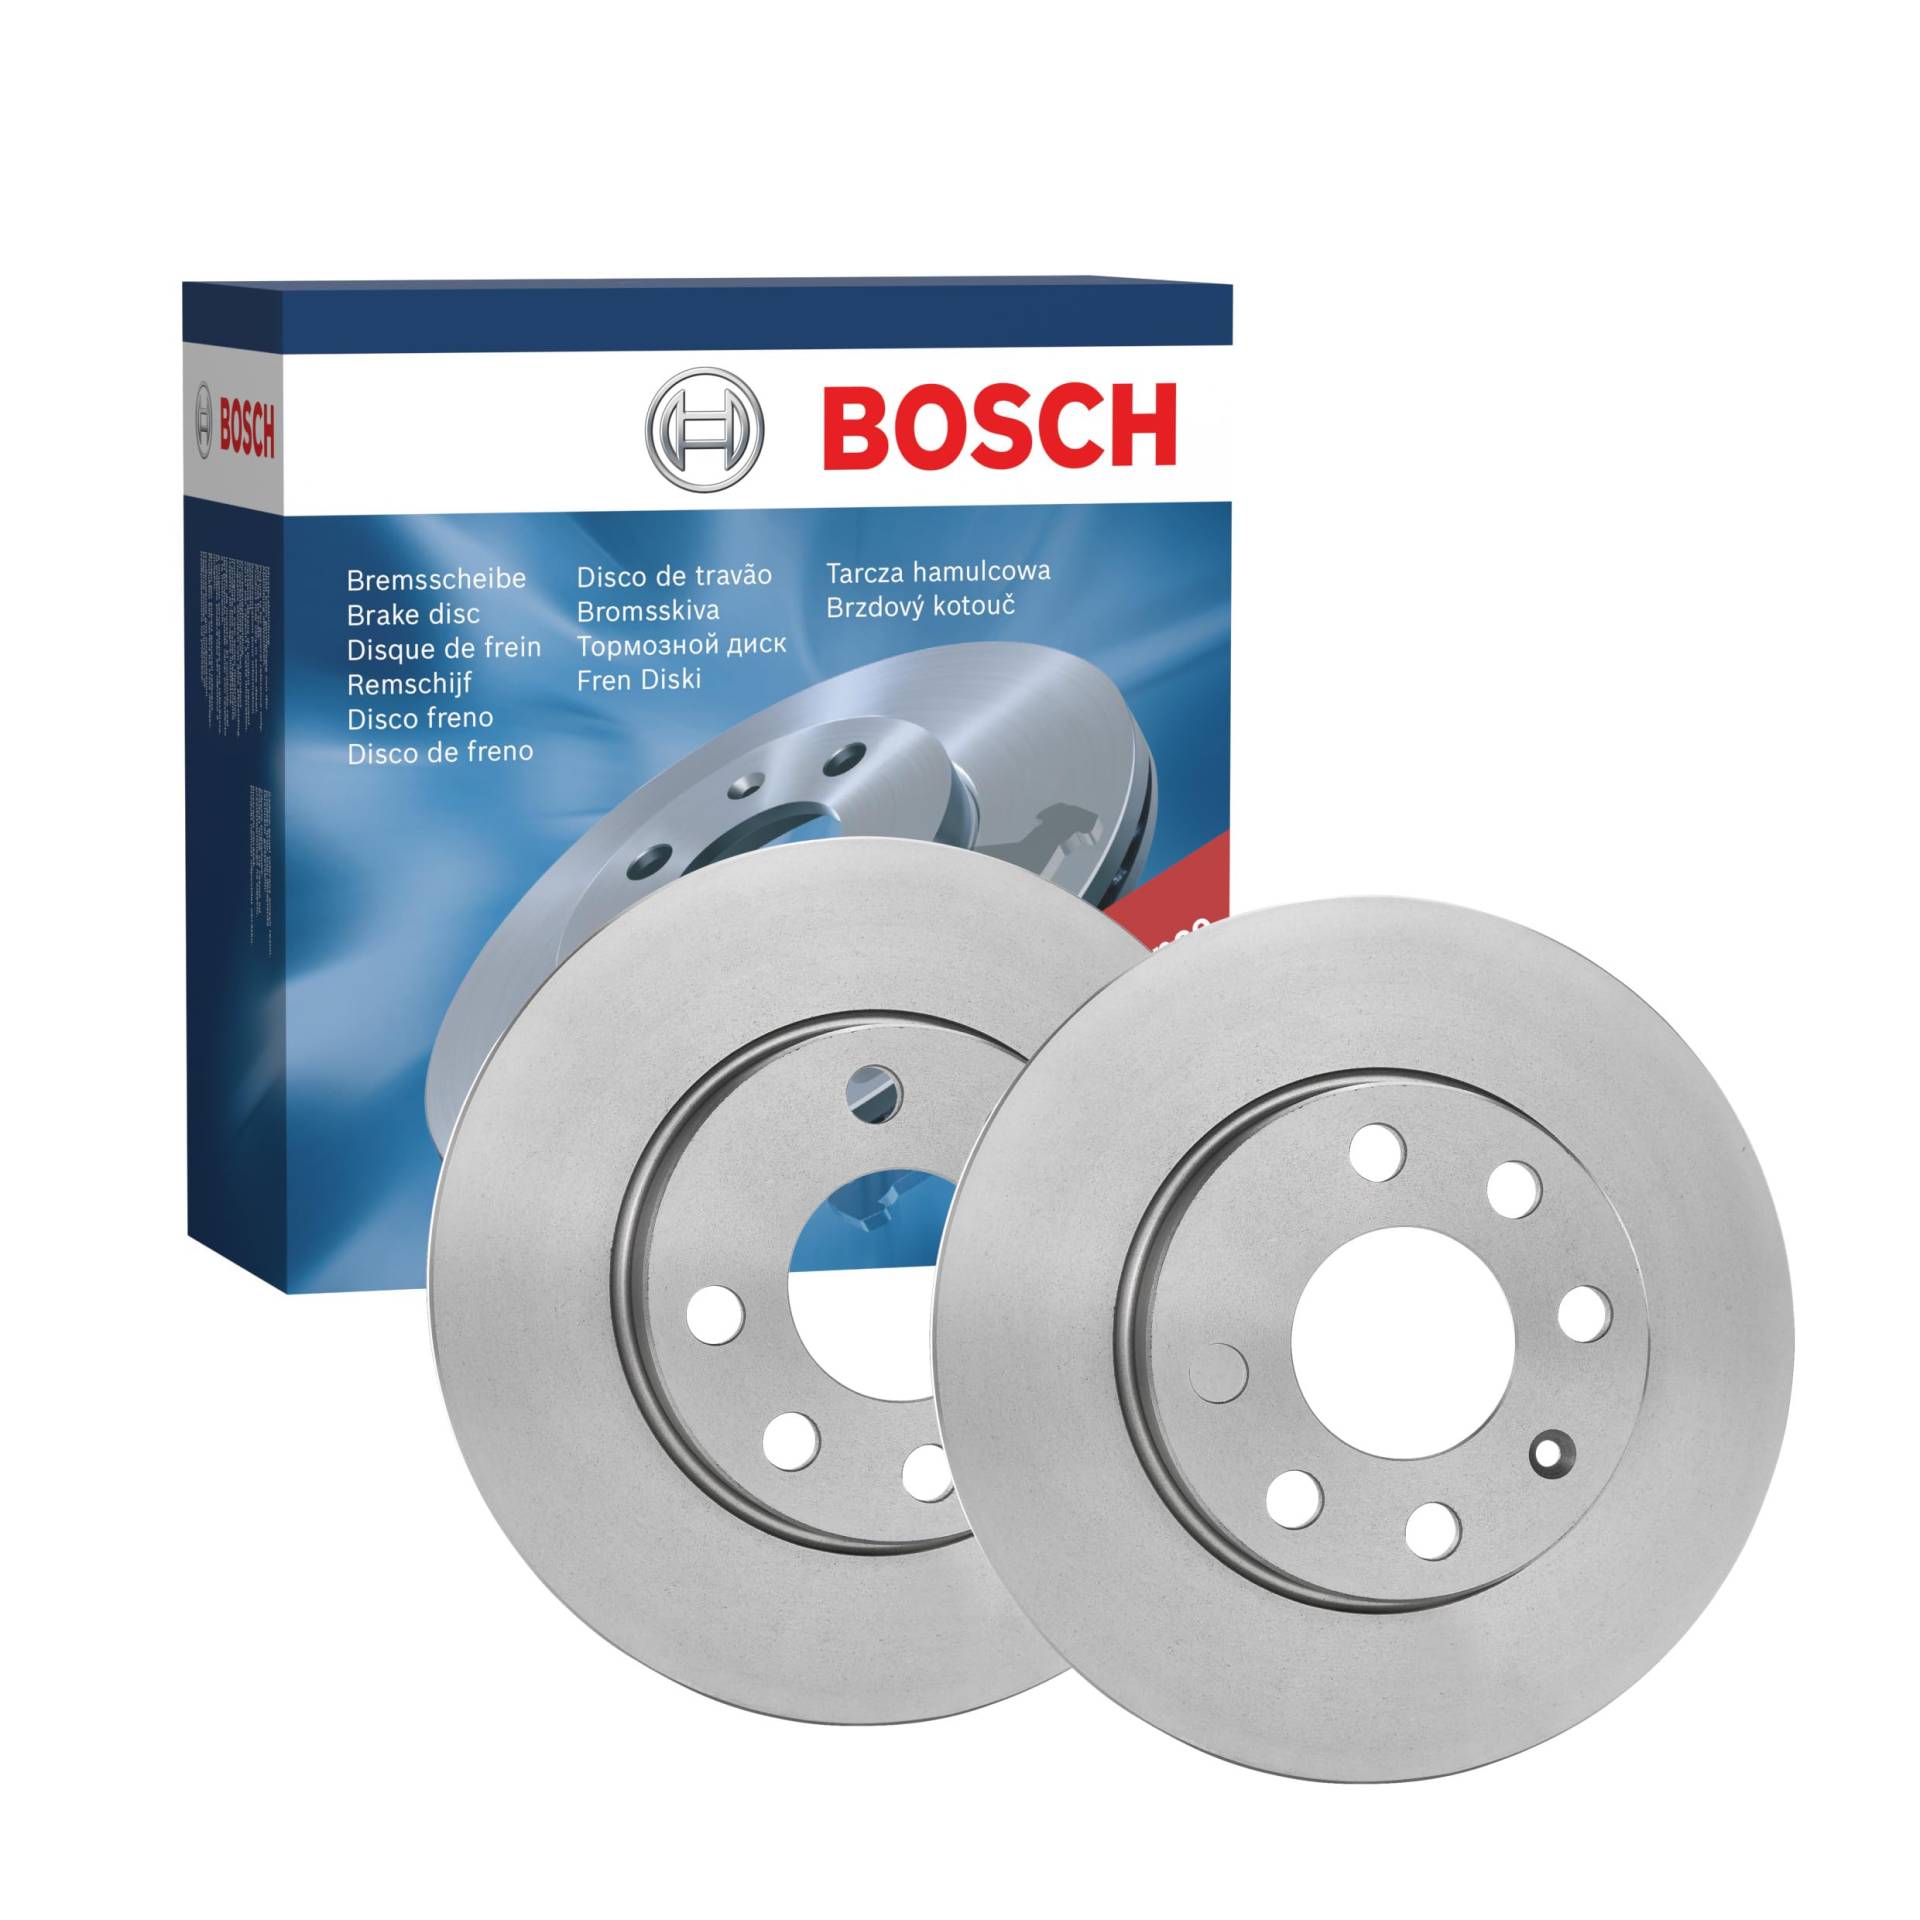 Bosch BD1061 Bremsscheiben - Vorderachse - ECE-R90 Zertifizierung - zwei Bremsscheiben pro Set von Bosch Automotive